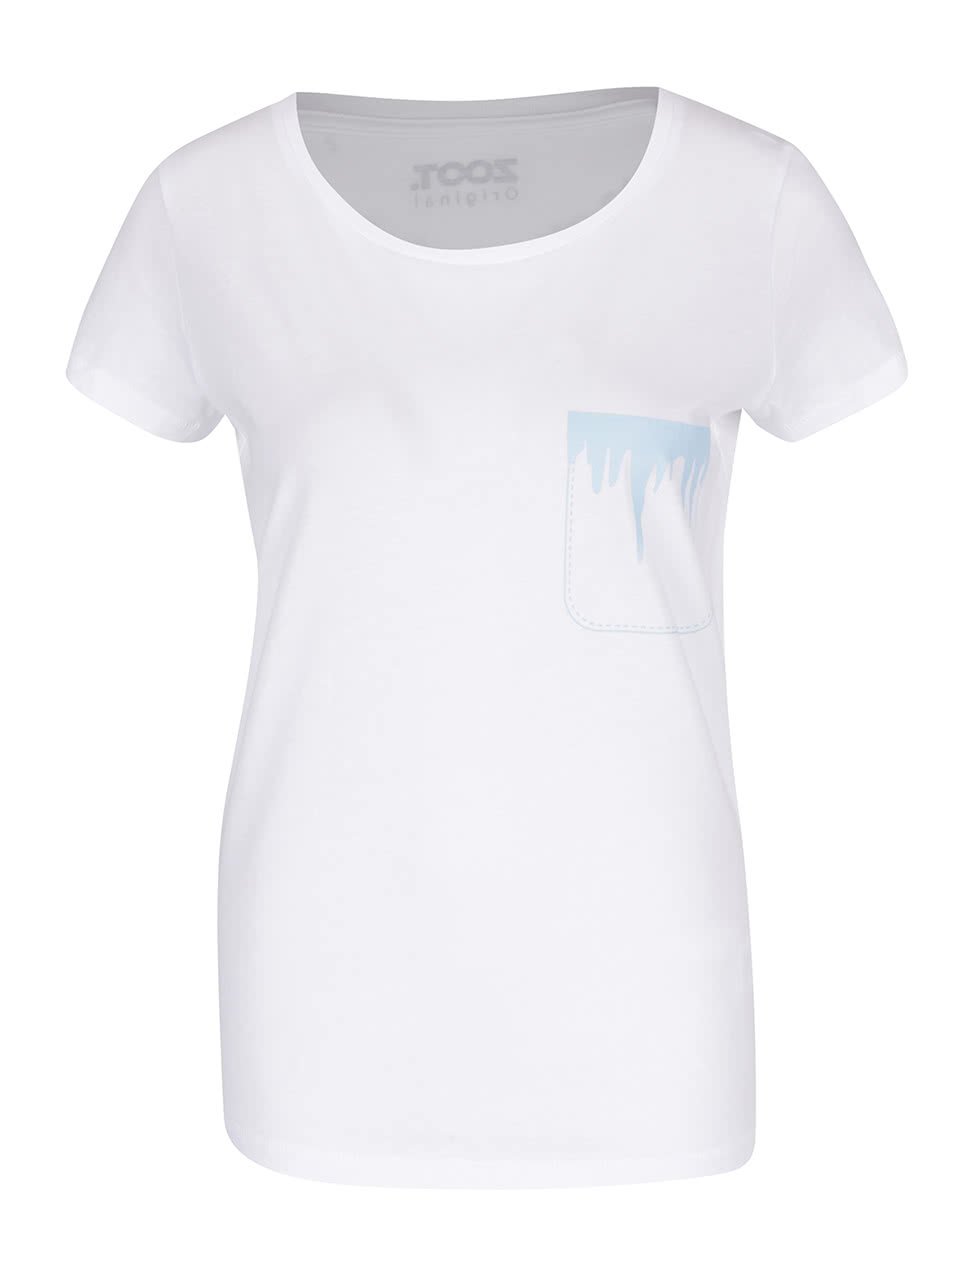 Bílé dámské tričko s potiskem ZOOT Originál Cencúl´